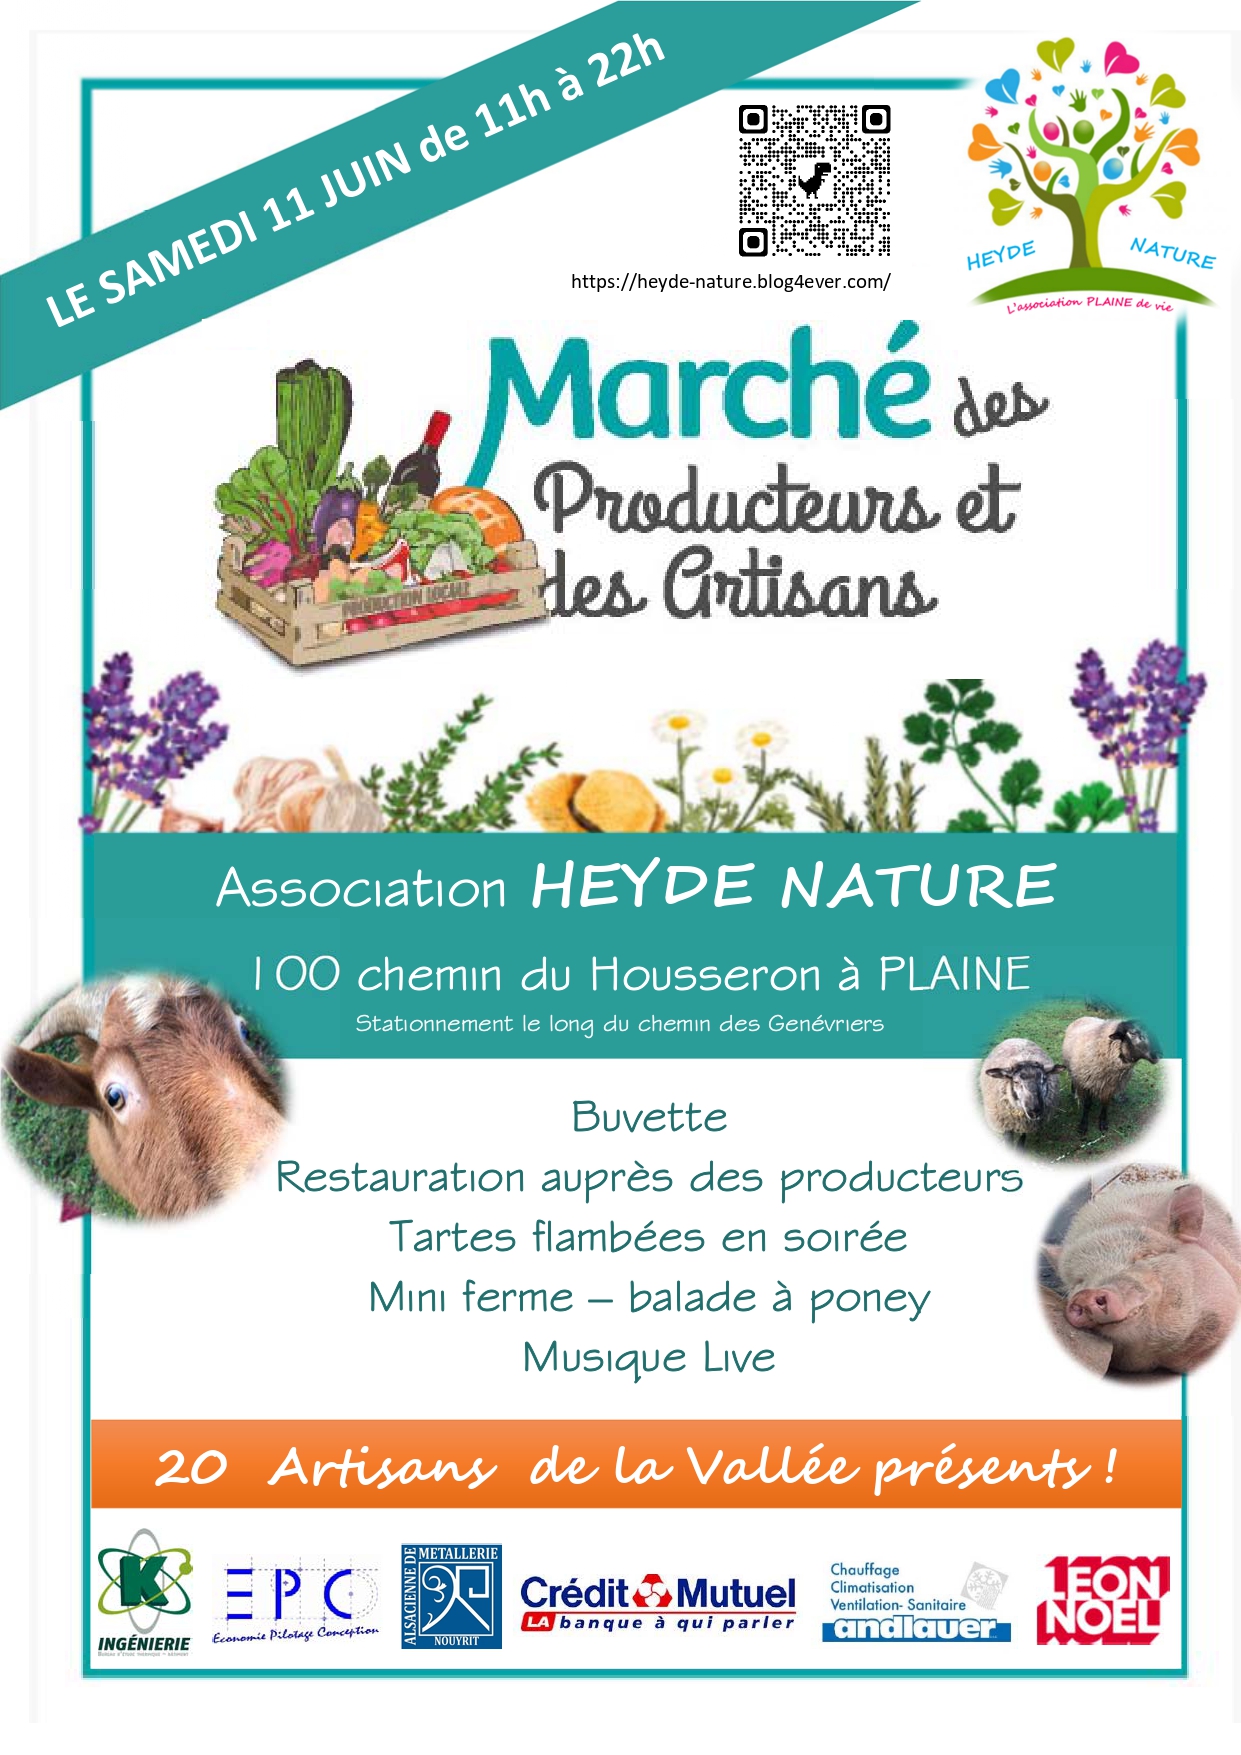 Marché des Producteurs et des Artisans @ Association Heyde Nature | Plaine | Grand Est | France